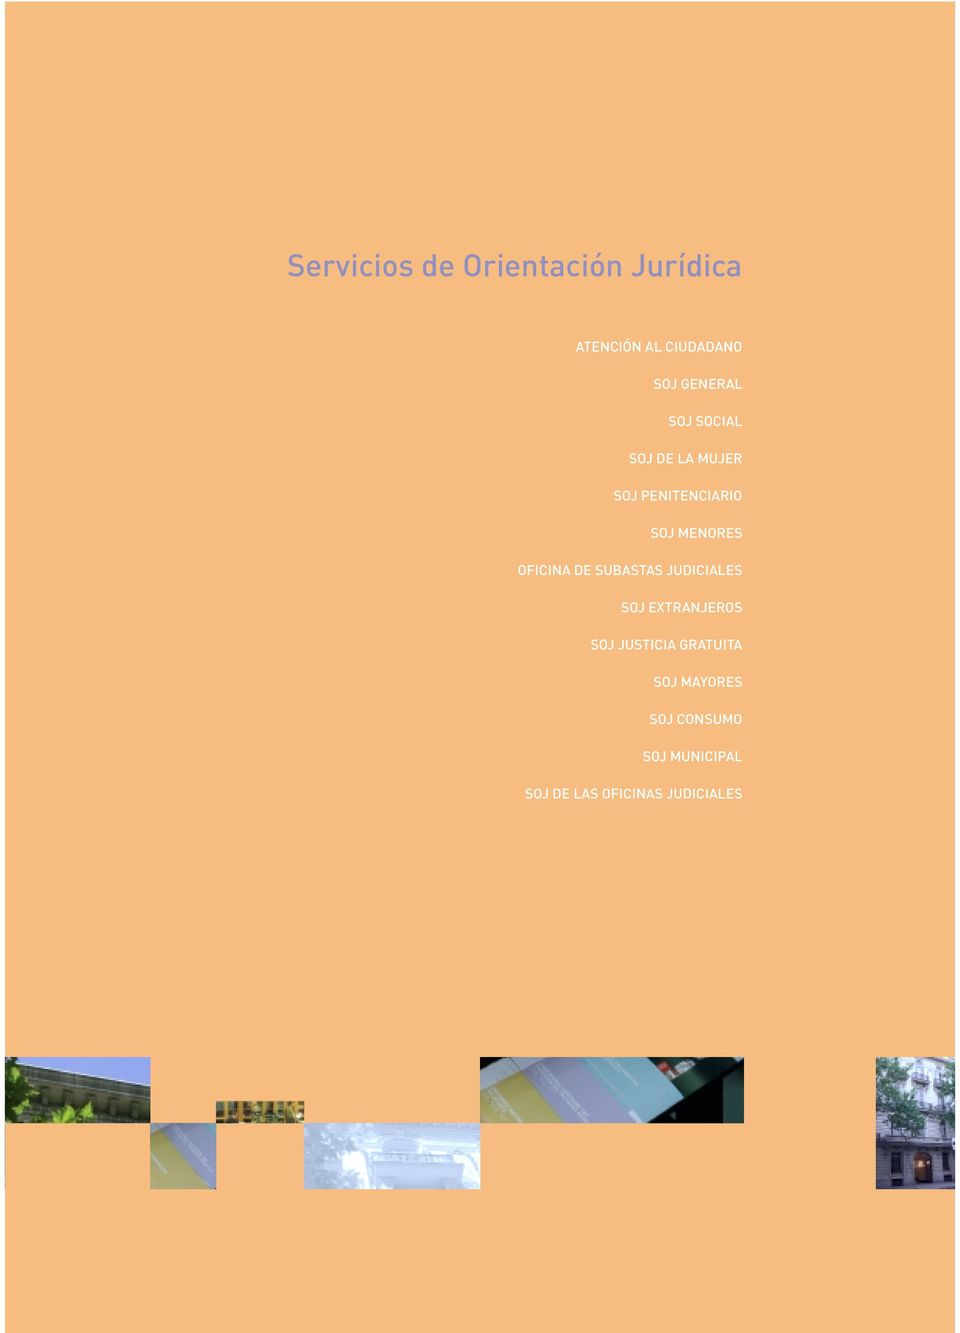 MENORES OFICINA DE SUBASTAS JUDICIALES EXTRANJEROS